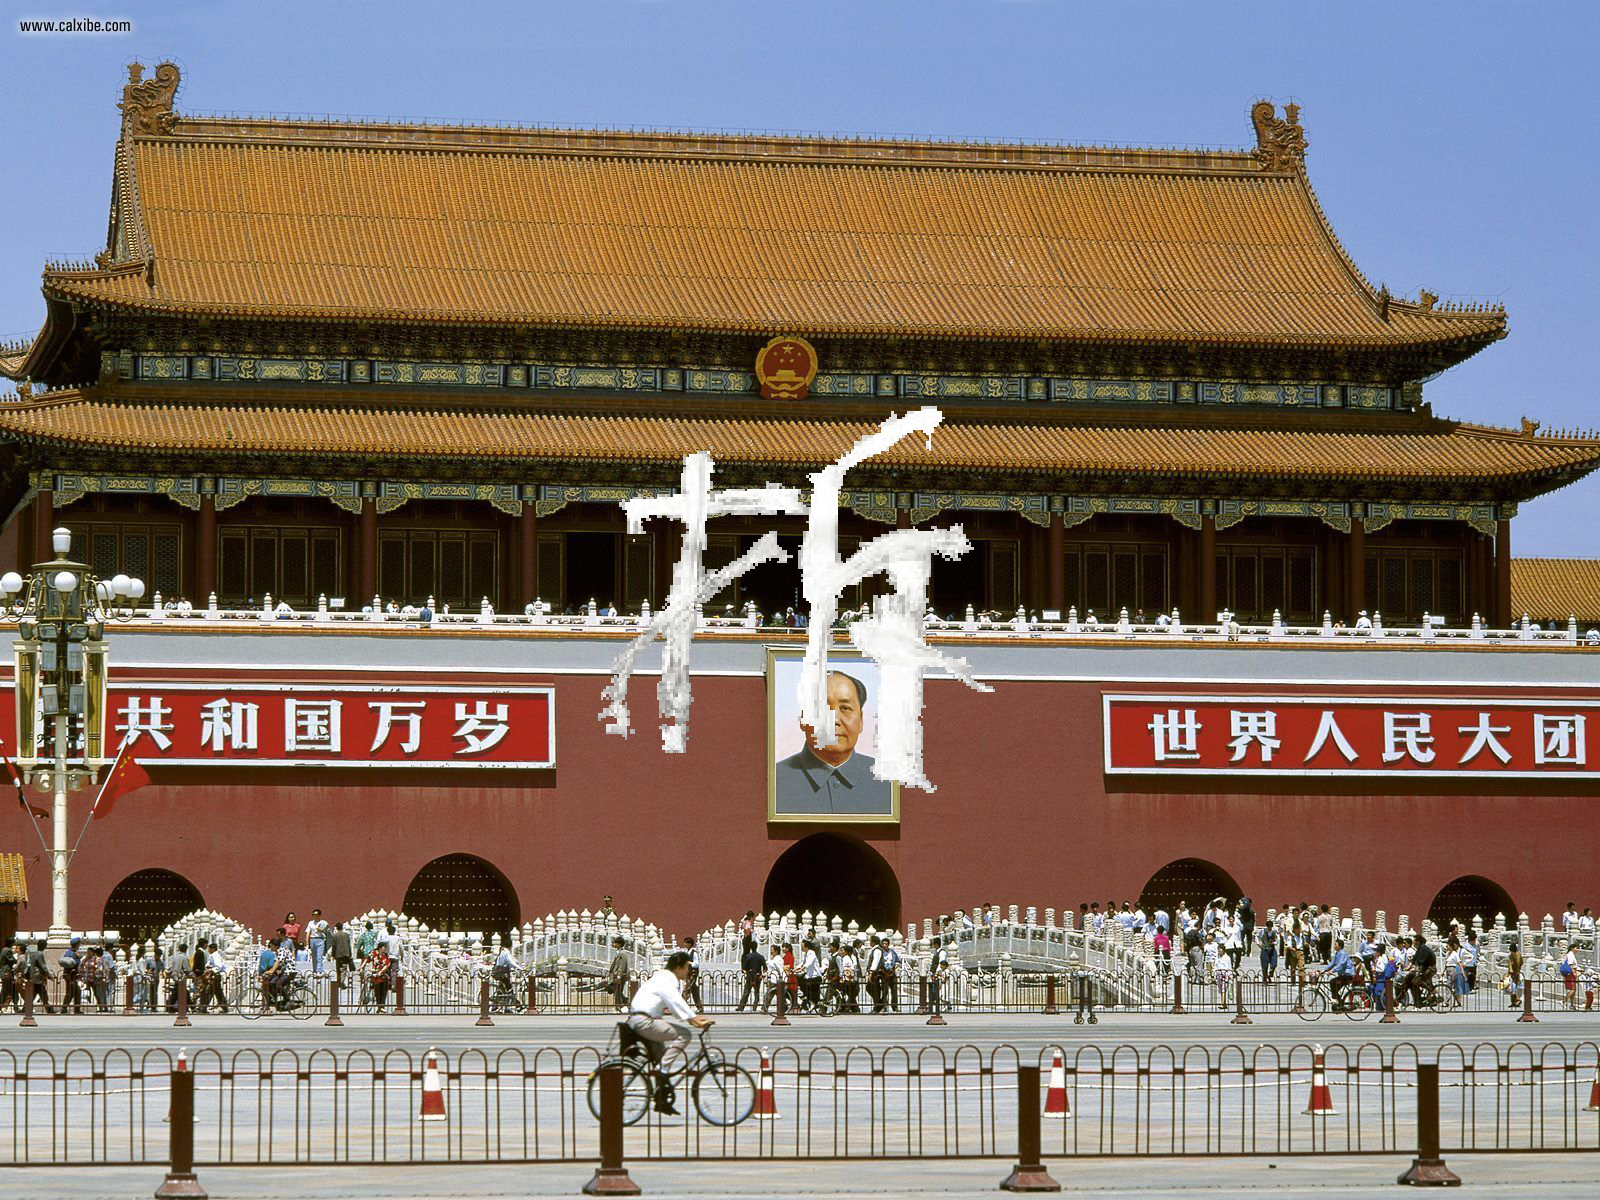 Tiananmen_Gate_Beijing_China - Chai